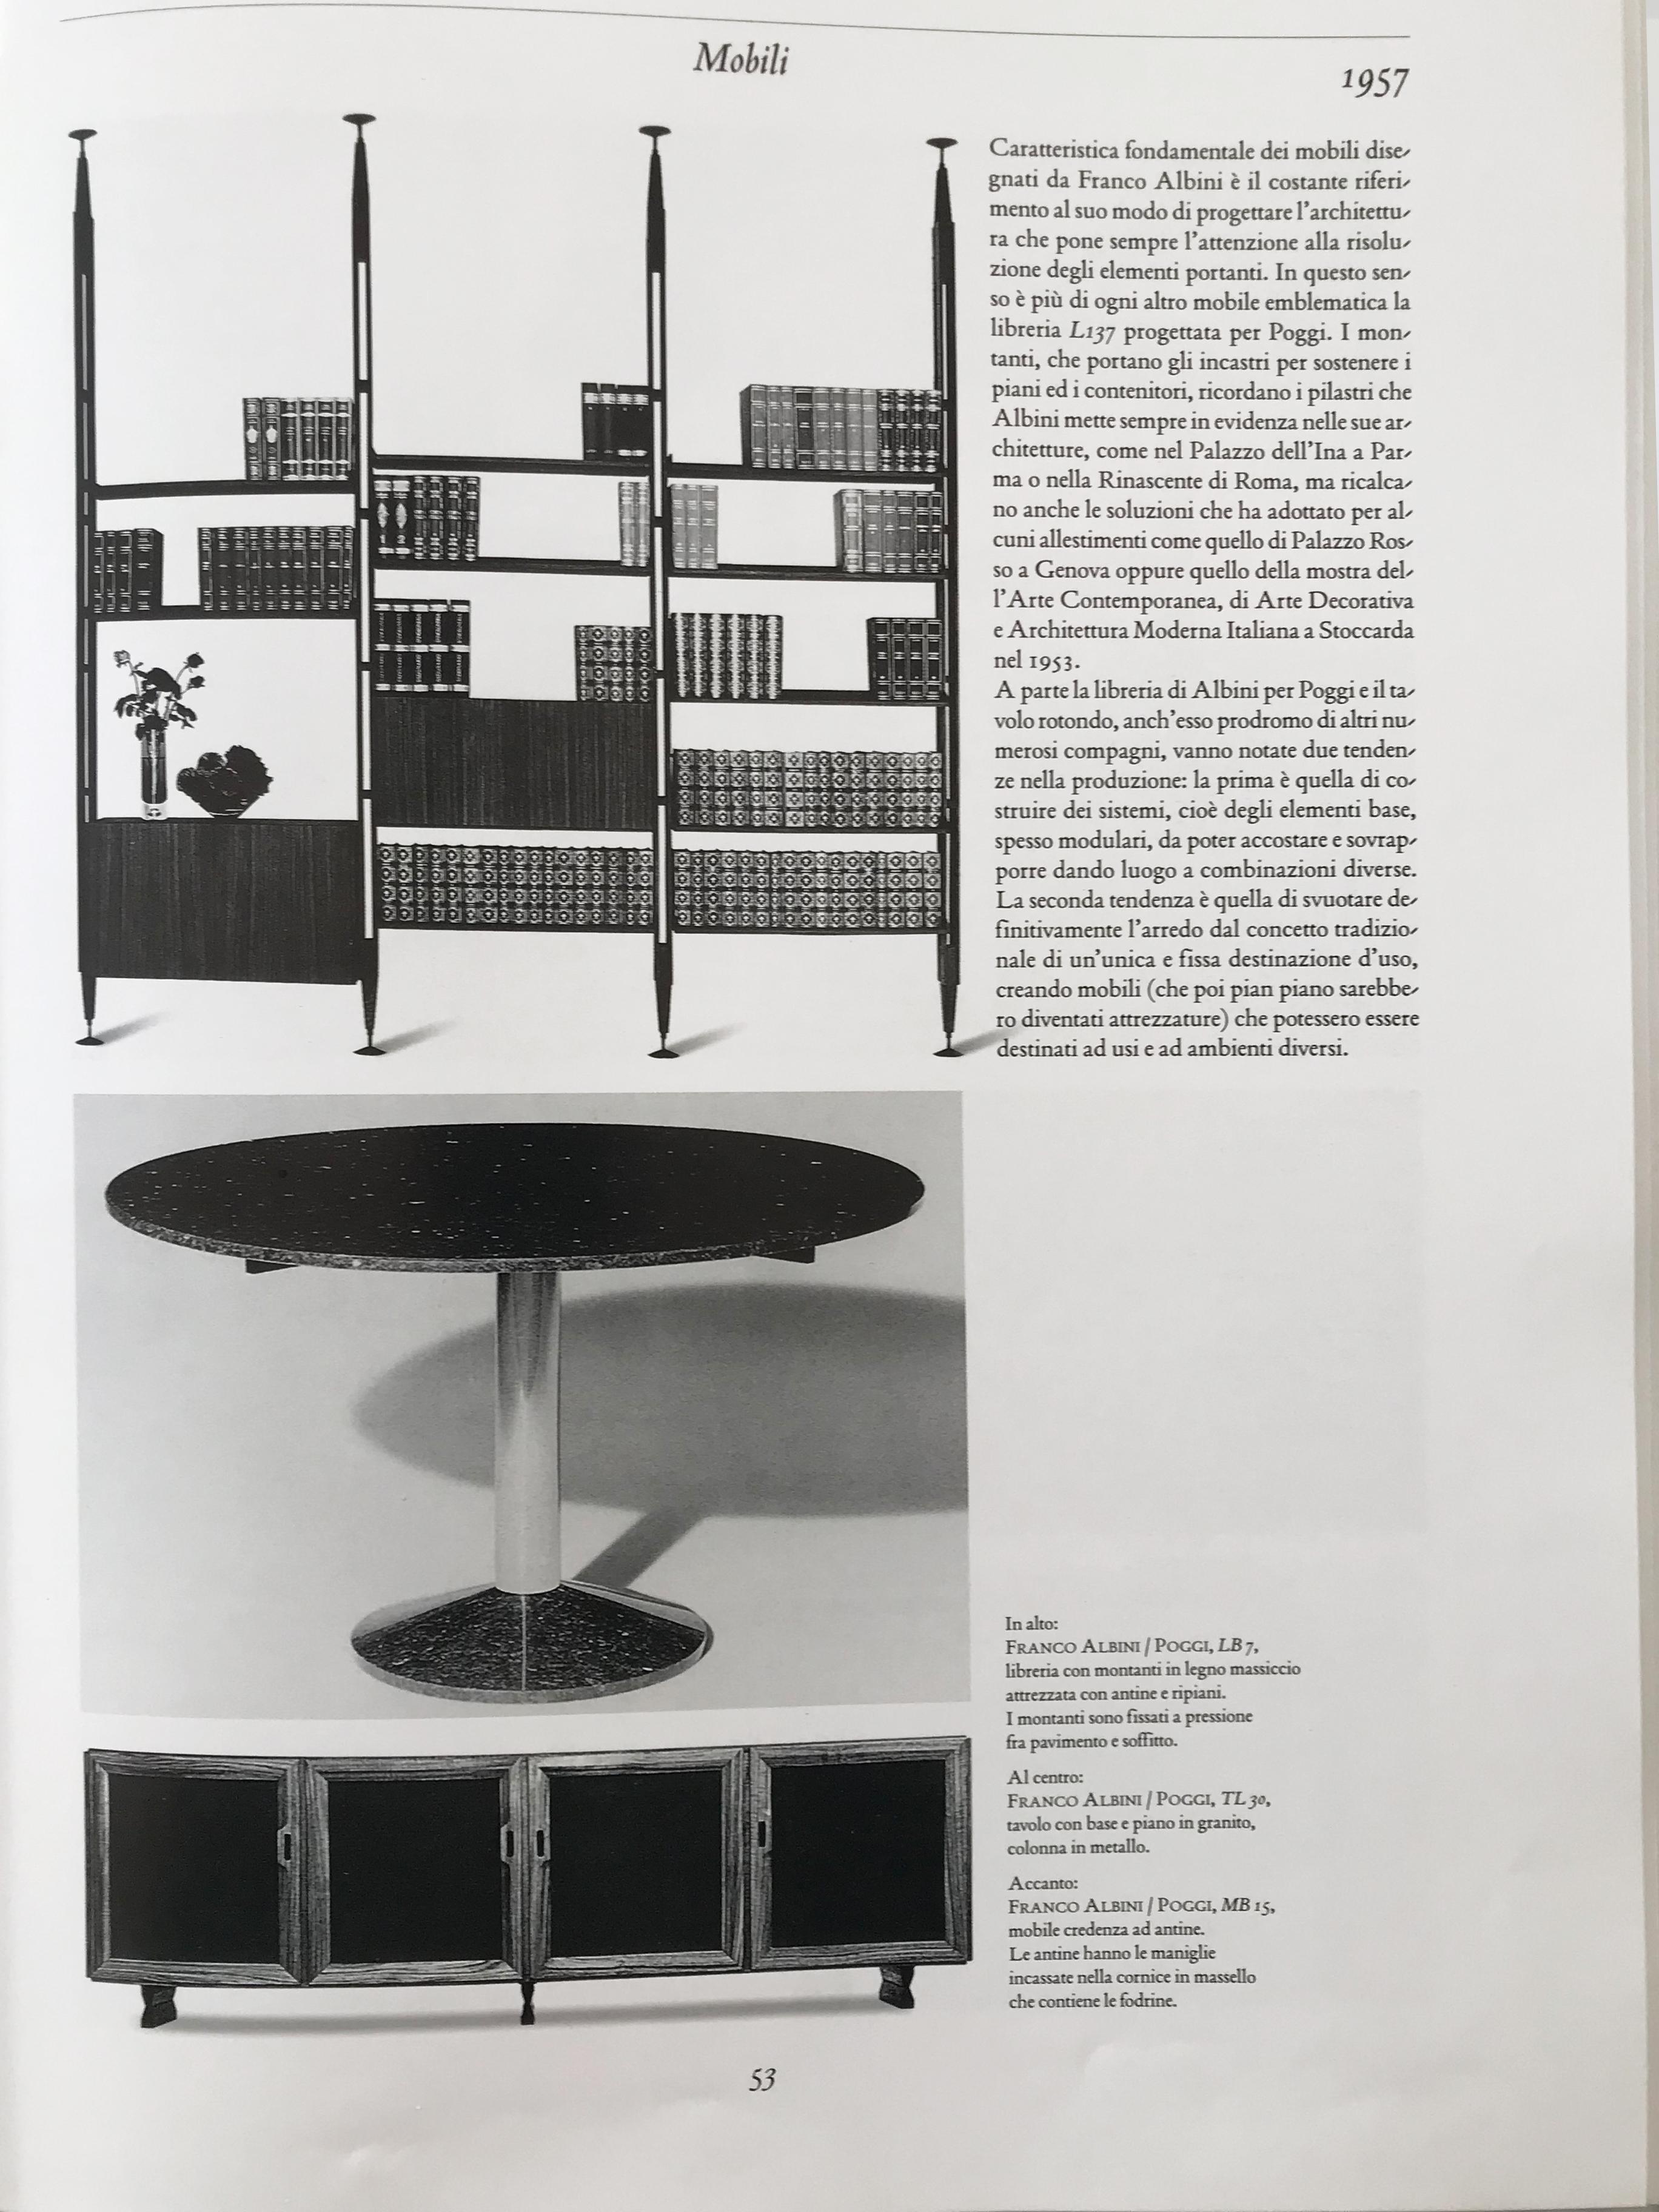 Veneer Franco Albini Italian Midcentury Dark Wood Bookcase Lb7 for Poggi, 1950s For Sale